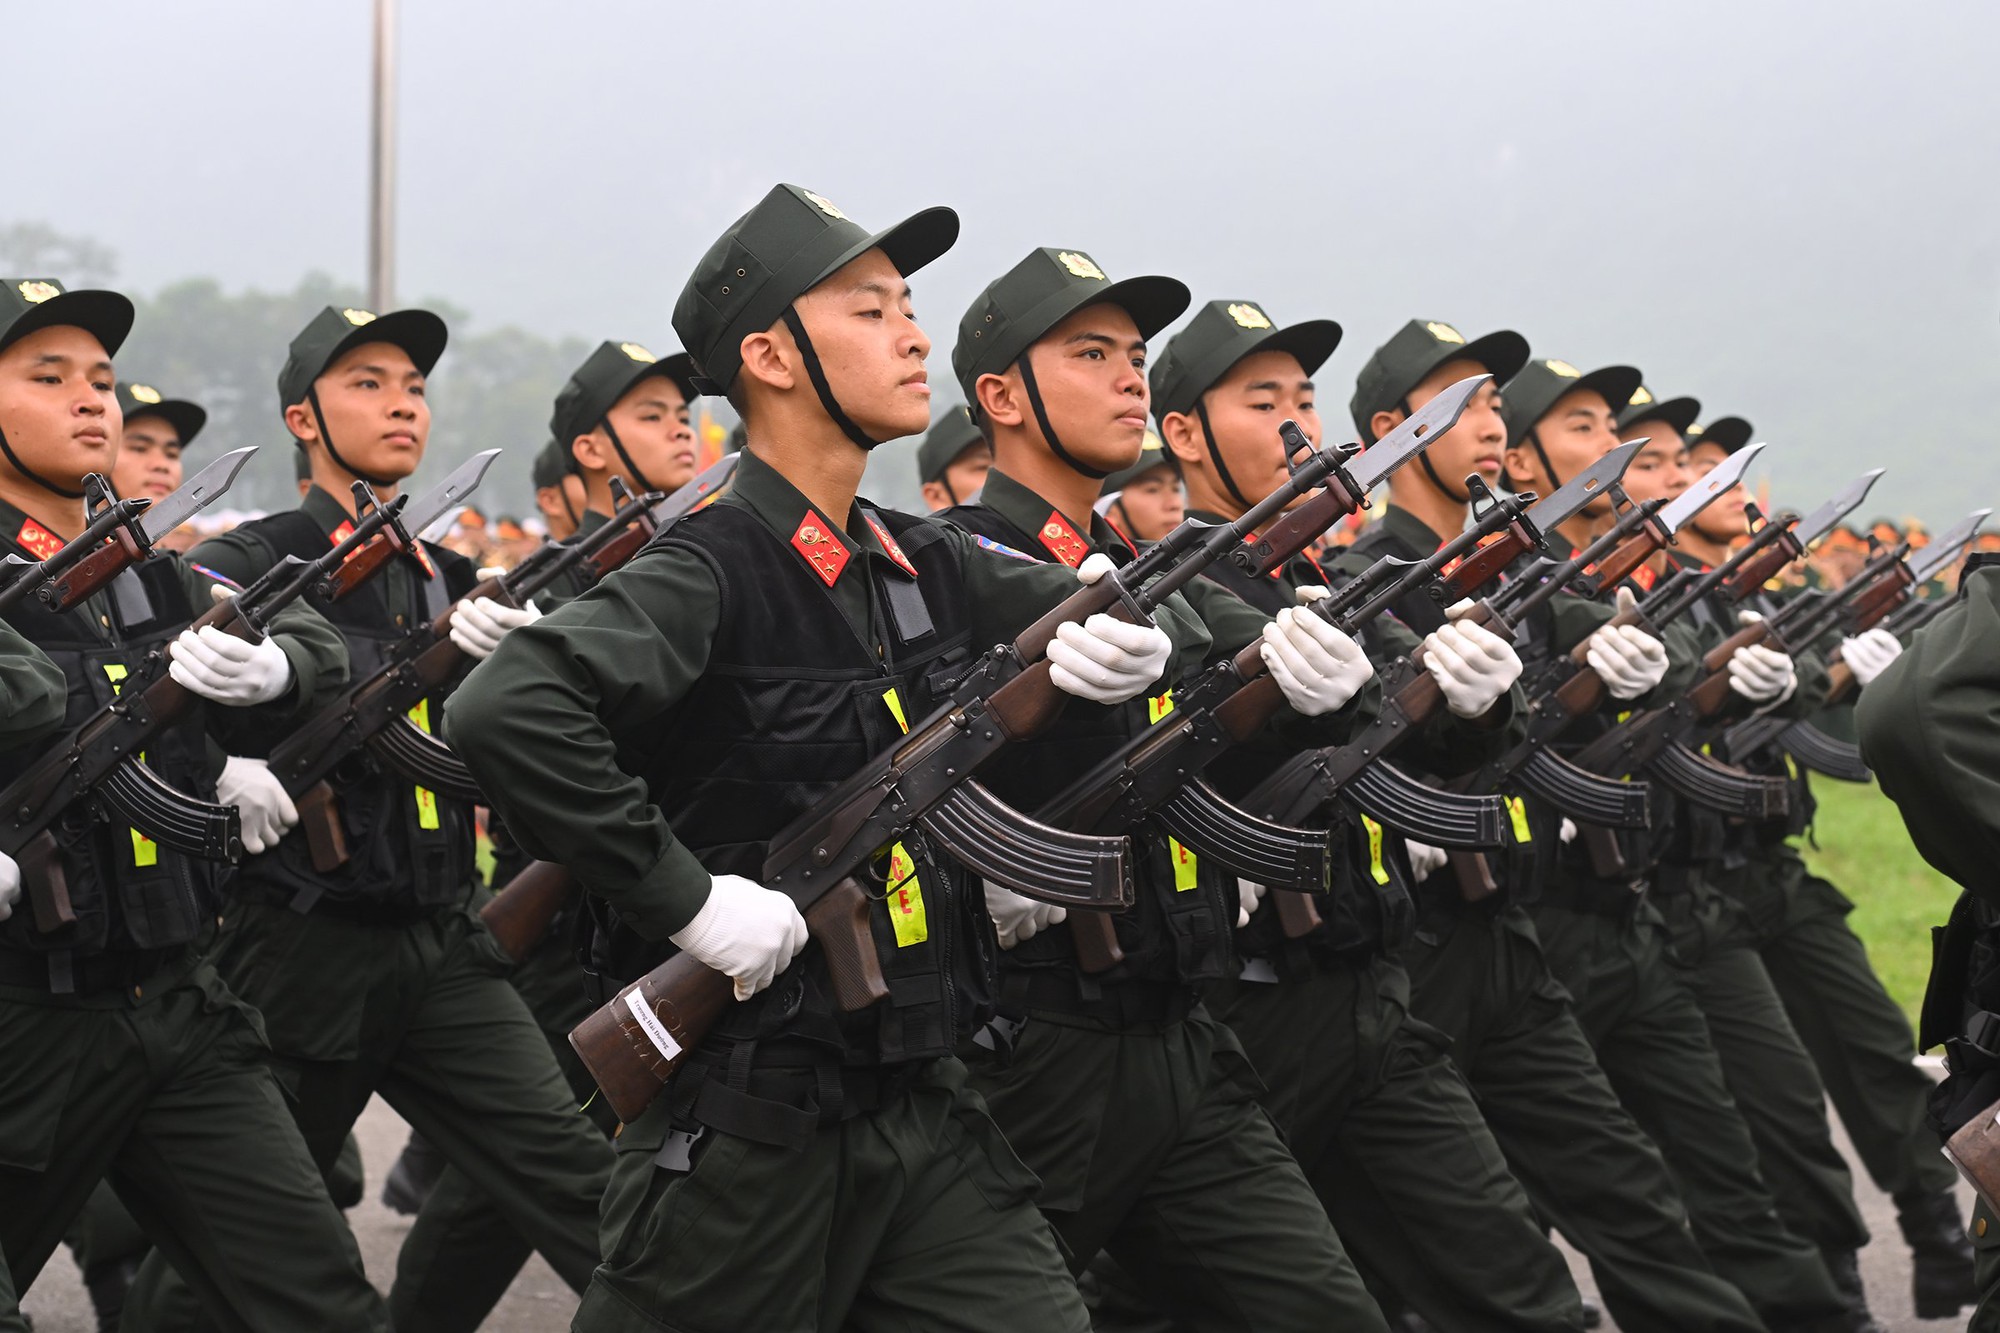 Cập nhật: Lễ diễu binh hào hùng chưa từng có trong lịch sử với 12.000 người, 12 máy bay ở Điện Biên Phủ - Ảnh 17.